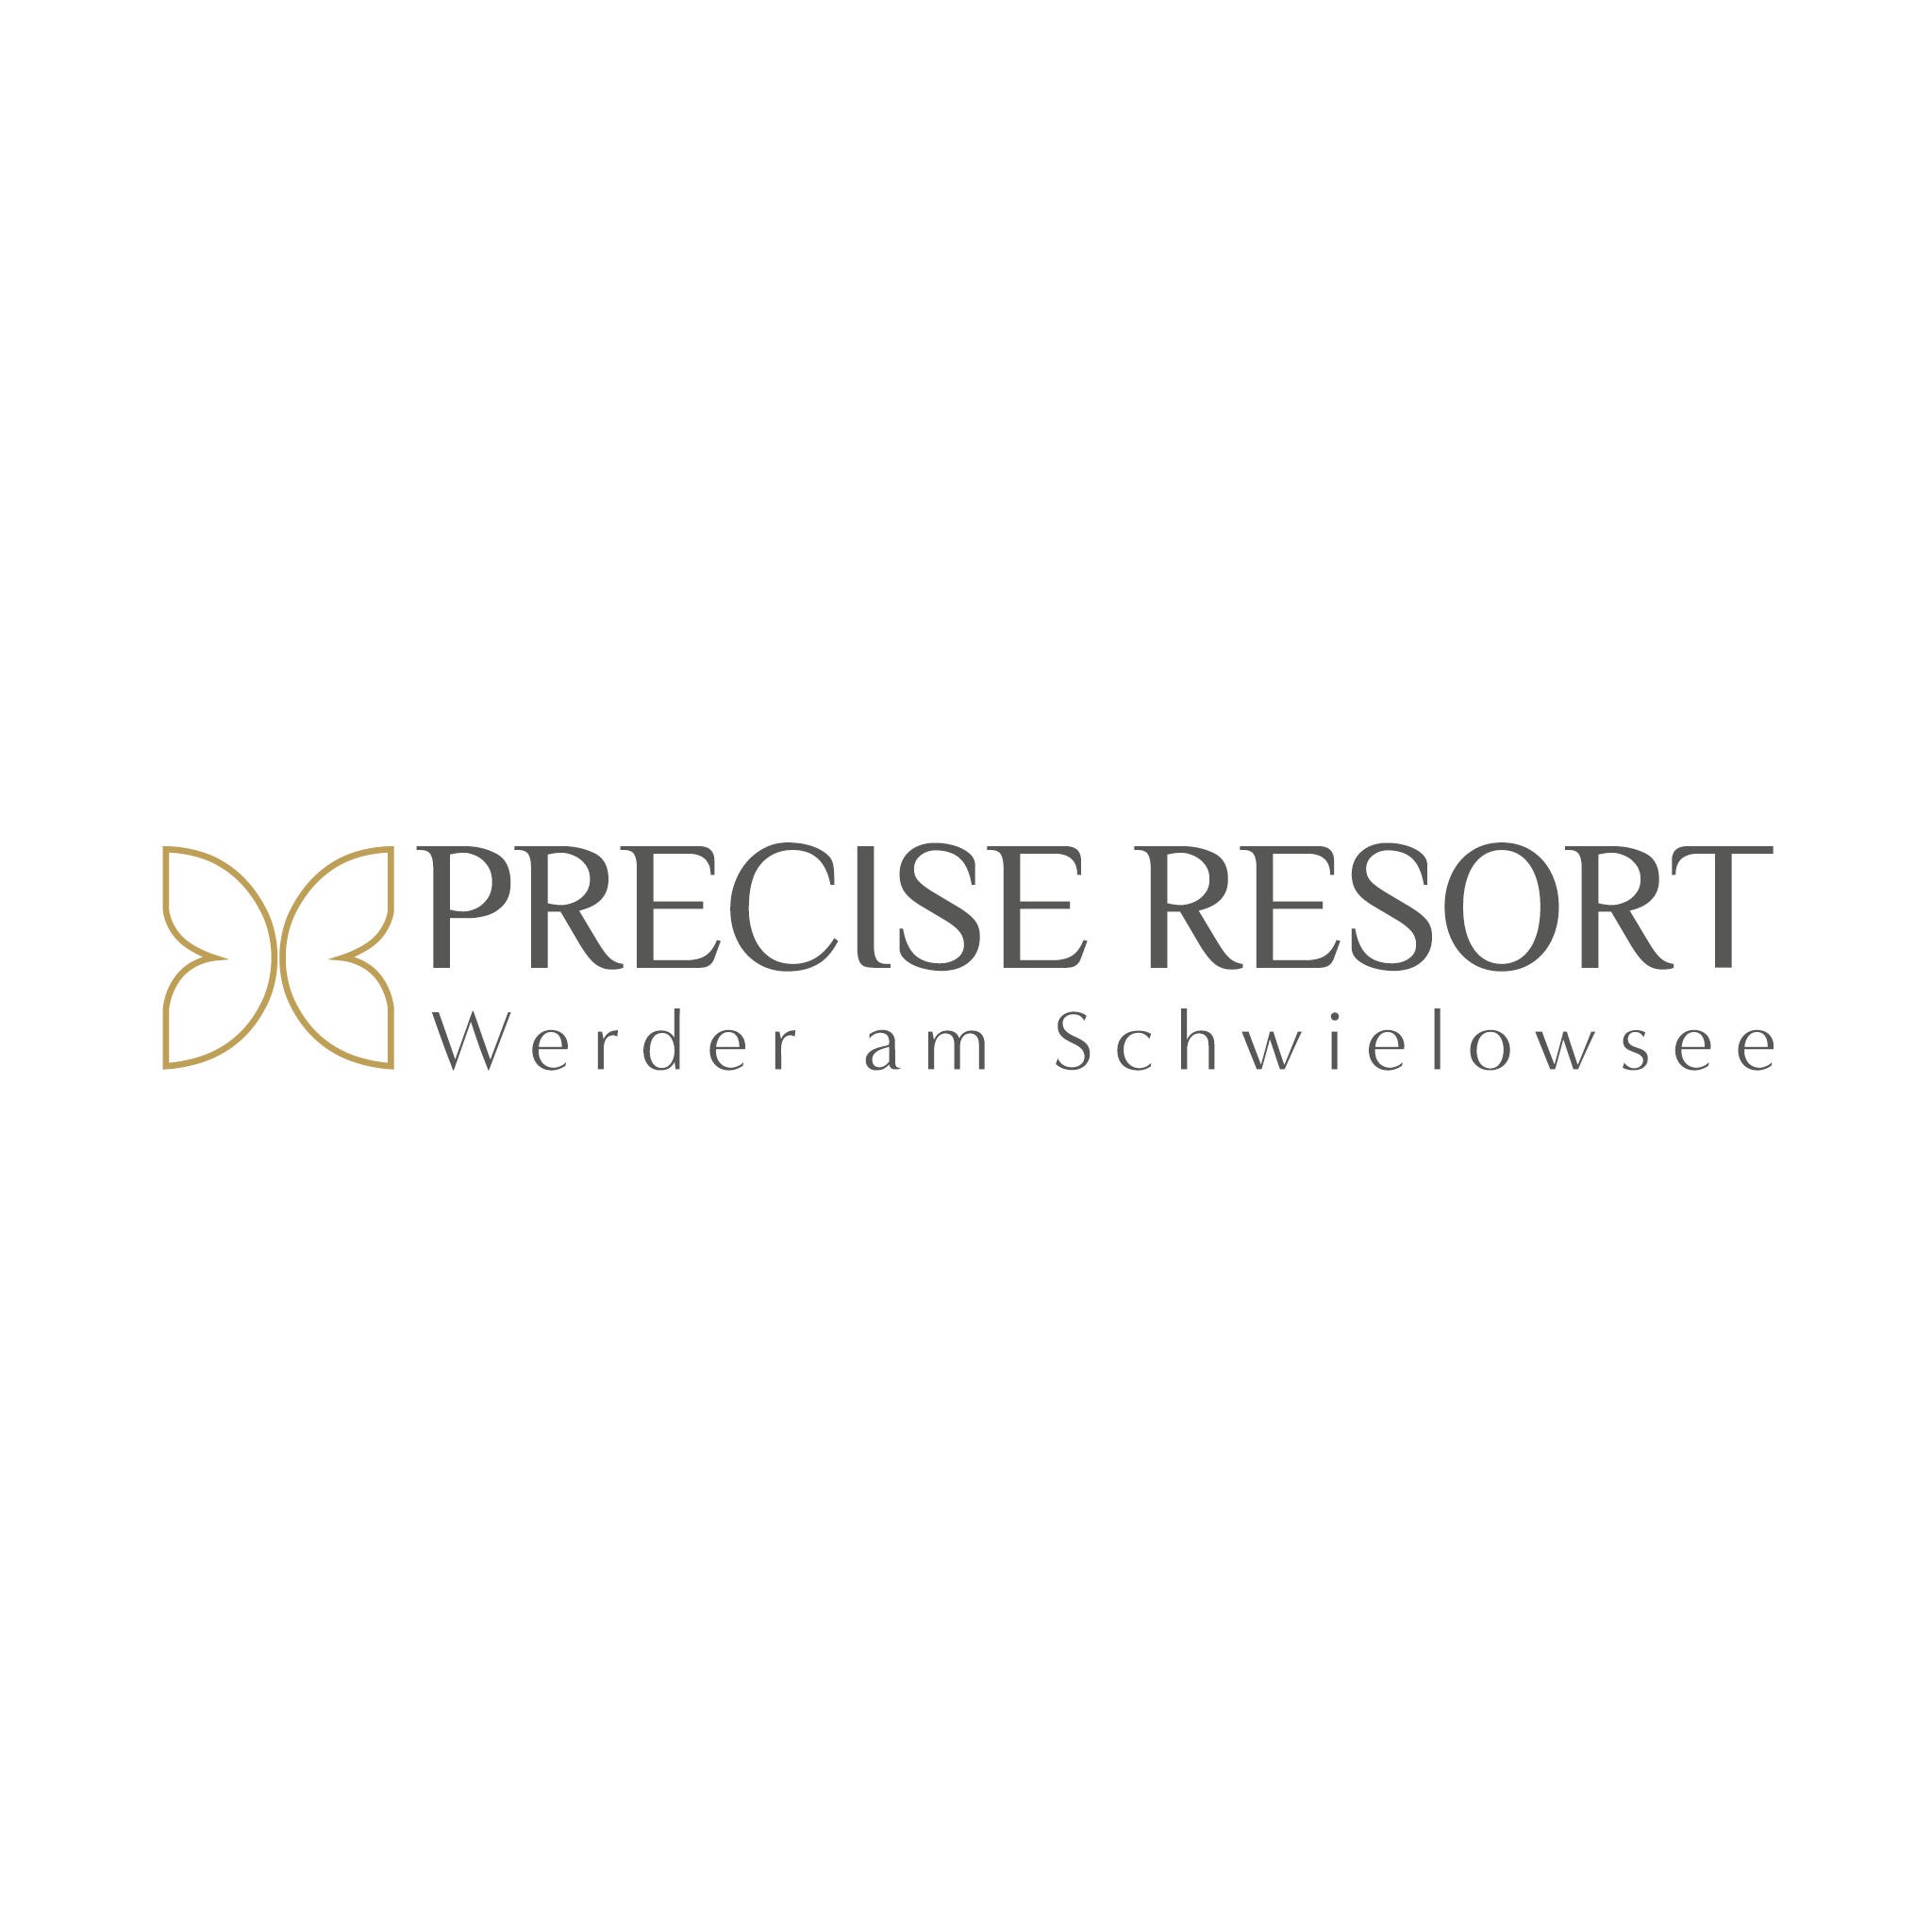 Logo von Precise Resort Schwielowsee